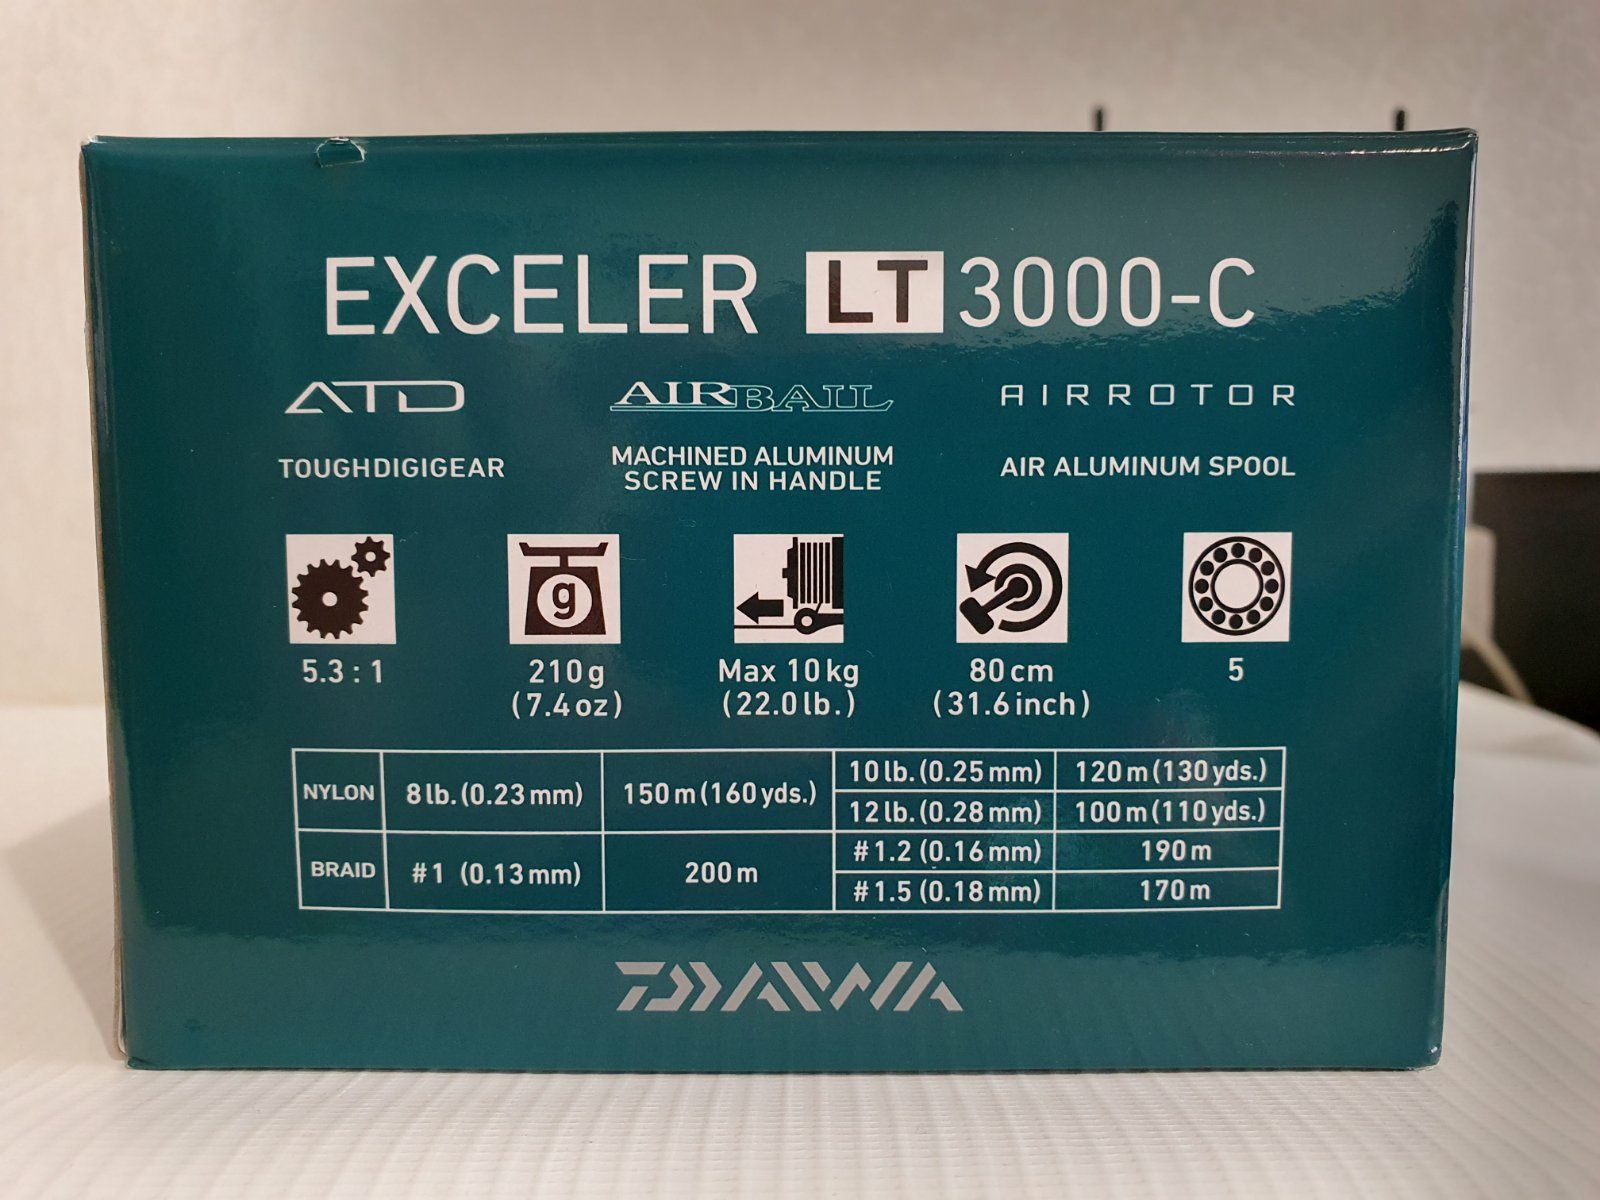 Daiwa Exceler LT 3000-C